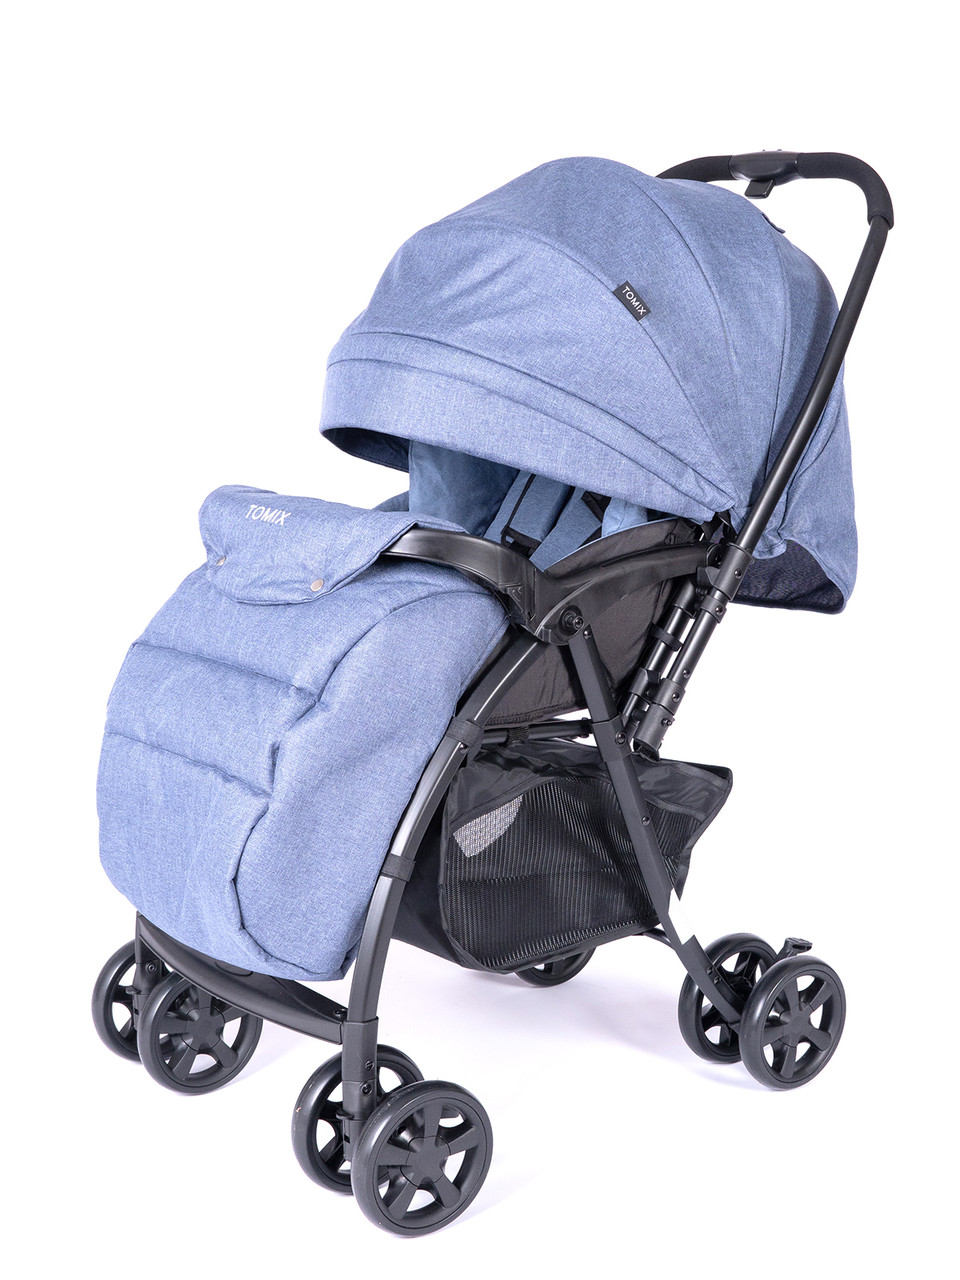 Детская коляска Tomix Carry Blue, фото 1